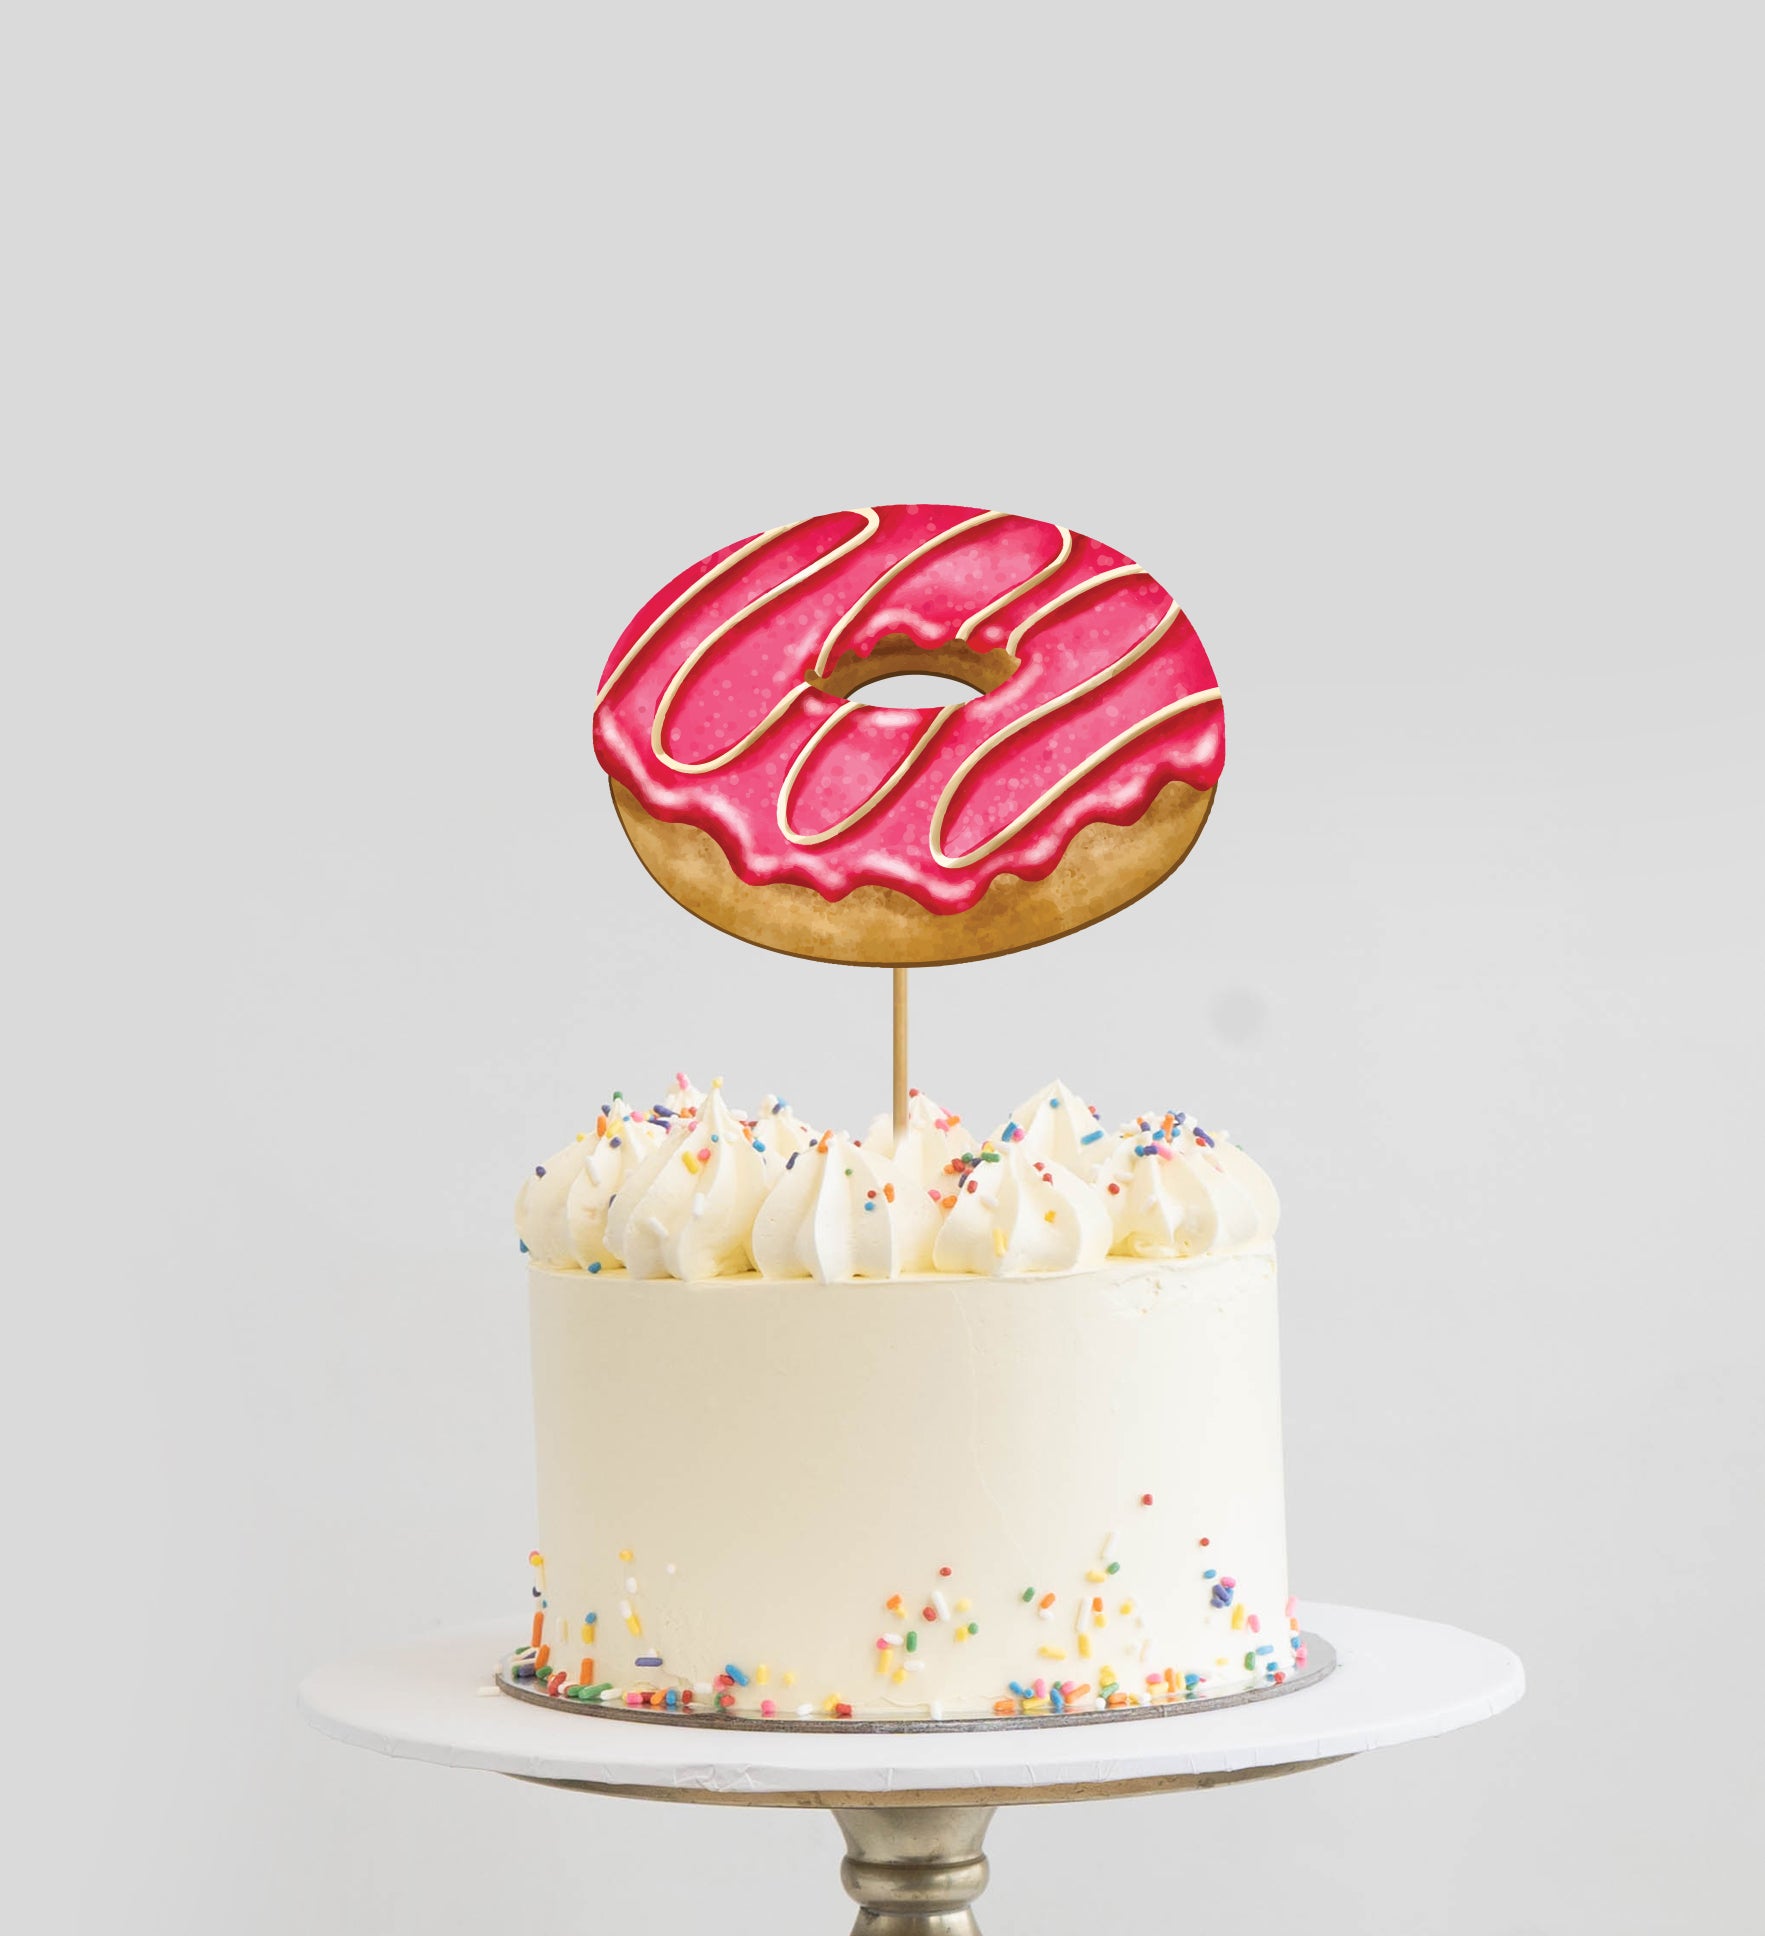 doughnut theme cake｜TikTok Search